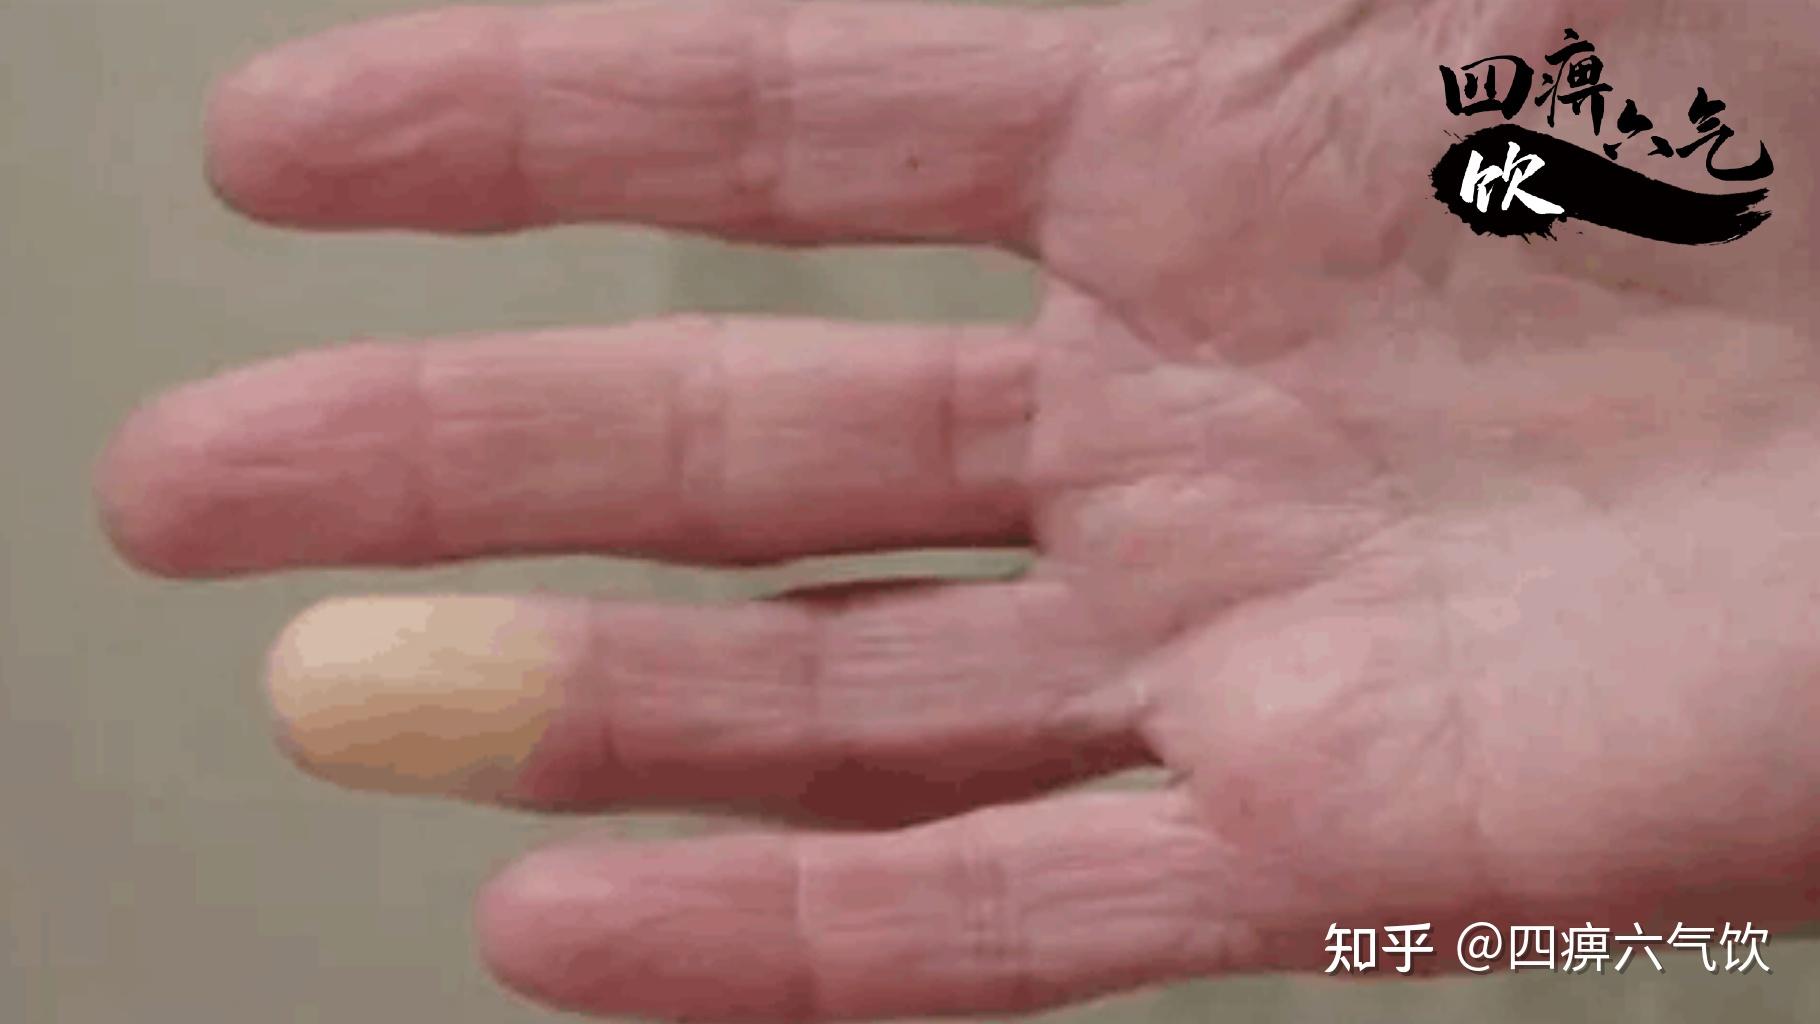 潍坊交通医院专家成功治愈雷诺氏症患者 张女士手部症状完全缓解 - 哔哩哔哩